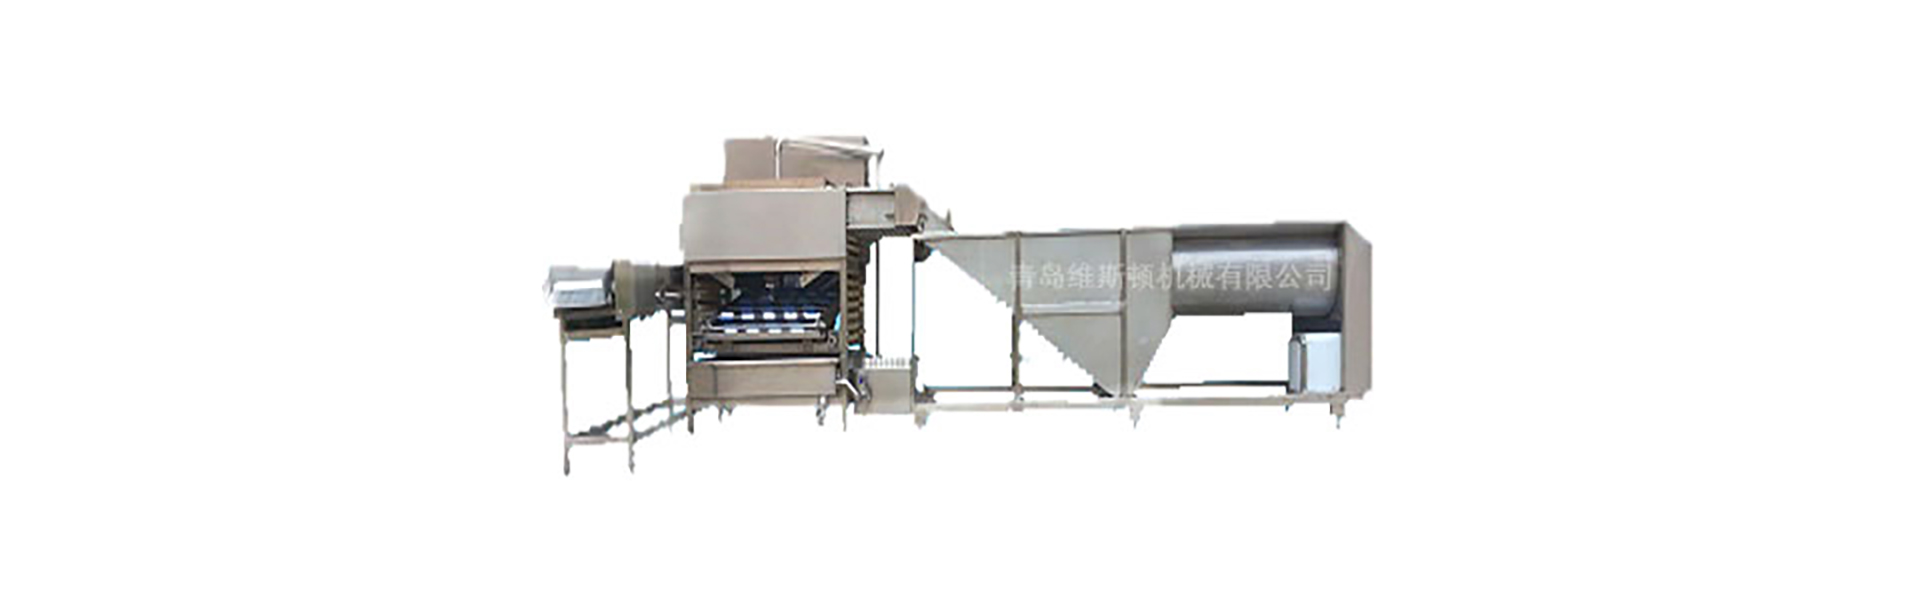 Crusher, Eiwaschmaschine, Eiablagemaschine.,Qingdao Wisdom Machinery Co.,Ltd